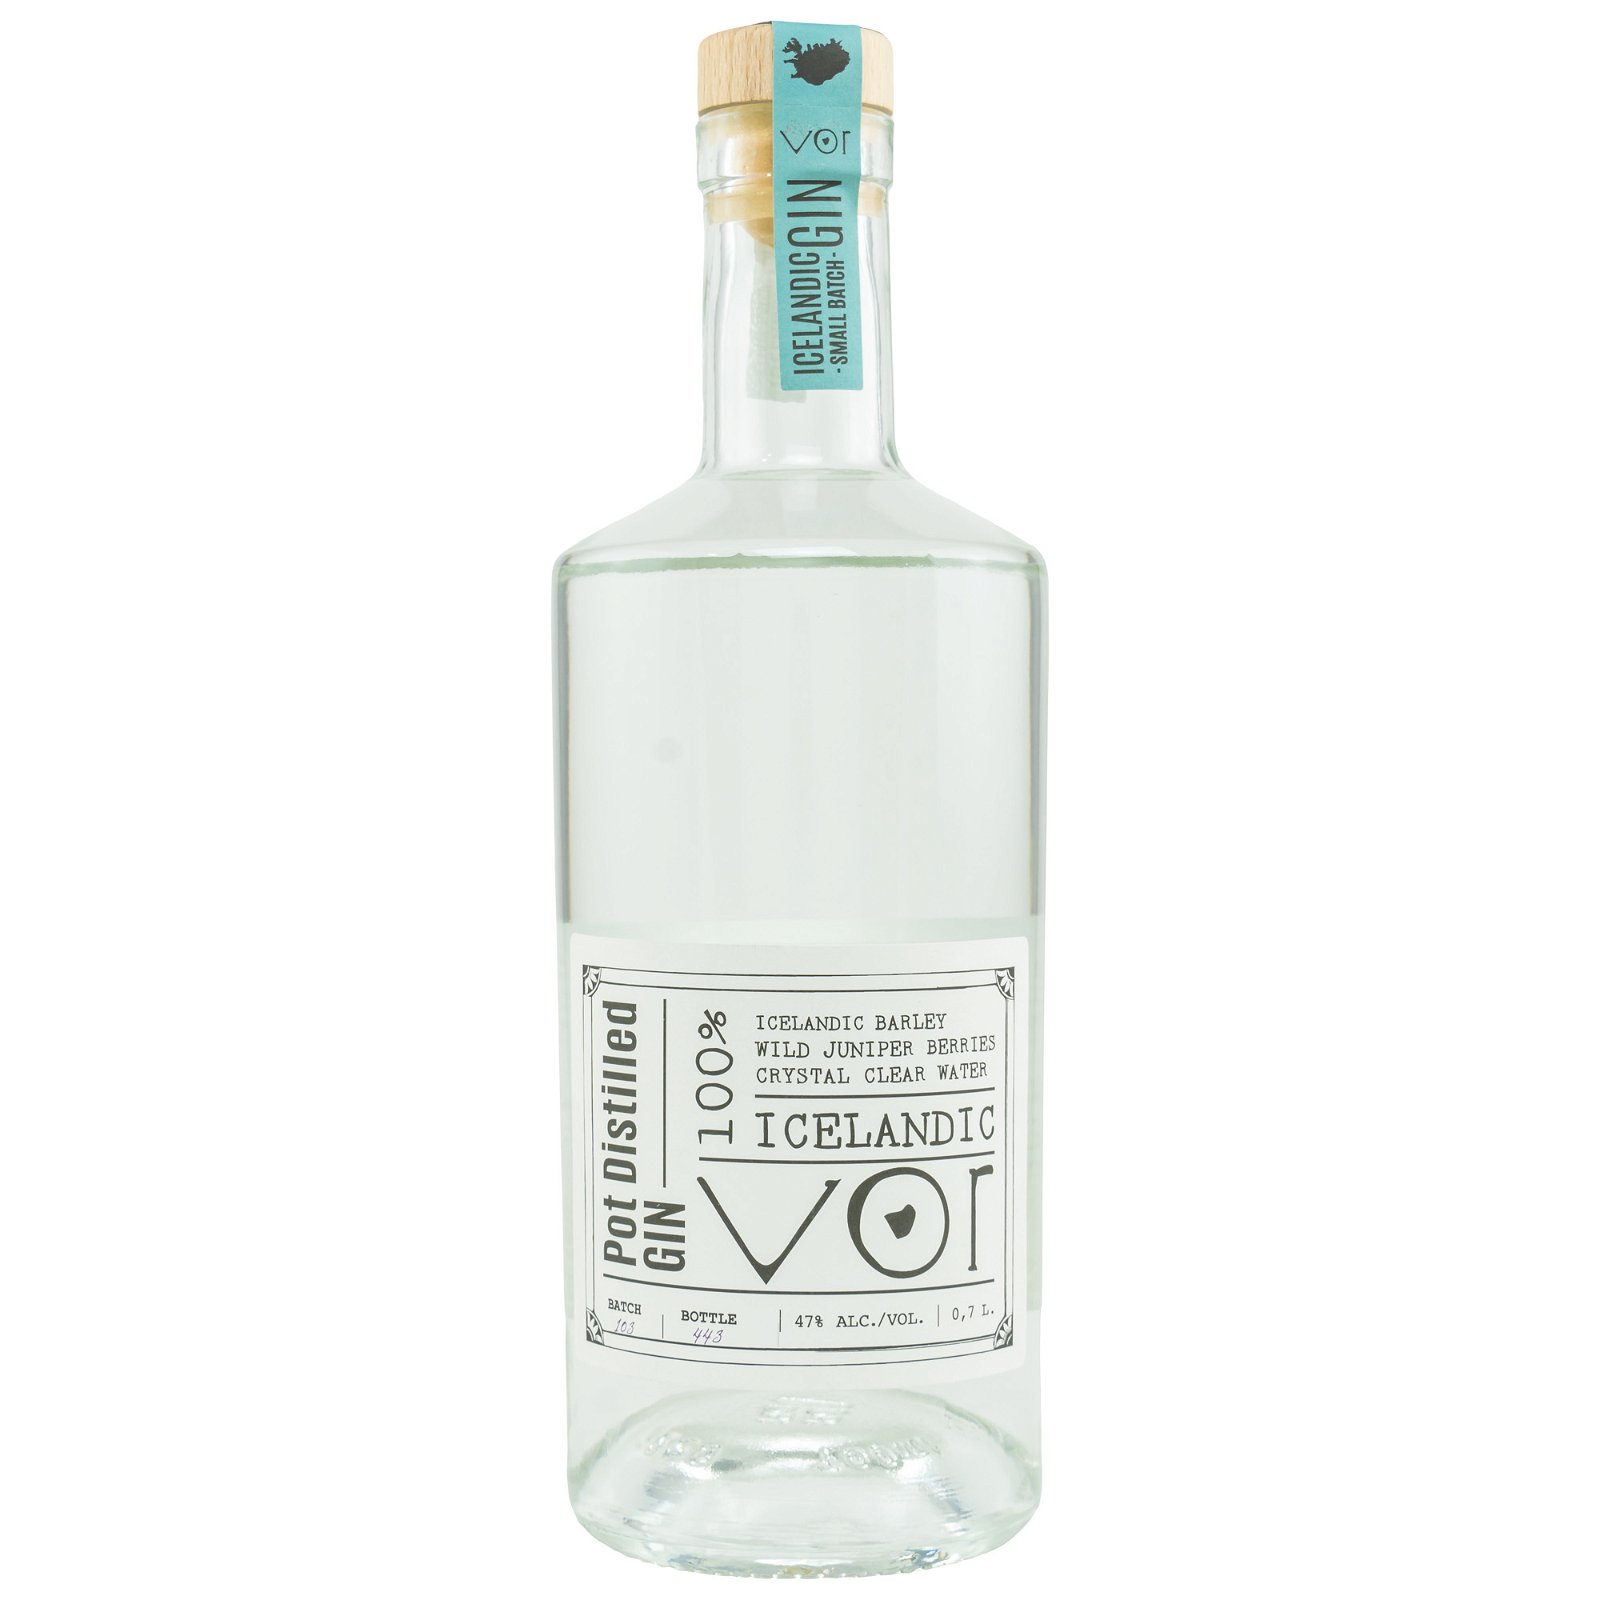 Vor Gin 100% Icelandic